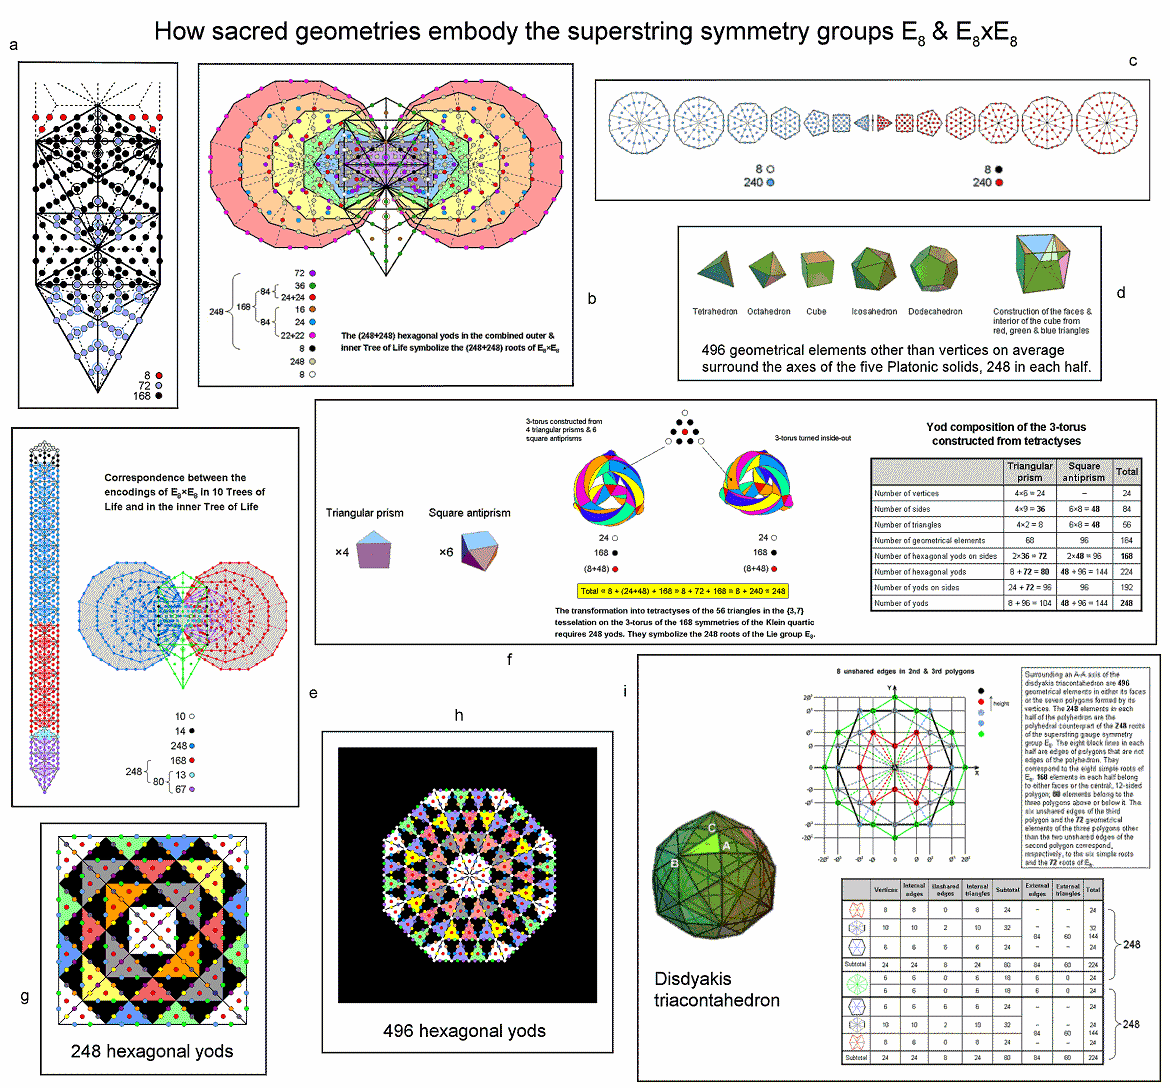 How sacred geometries embody E8 & E8xE8